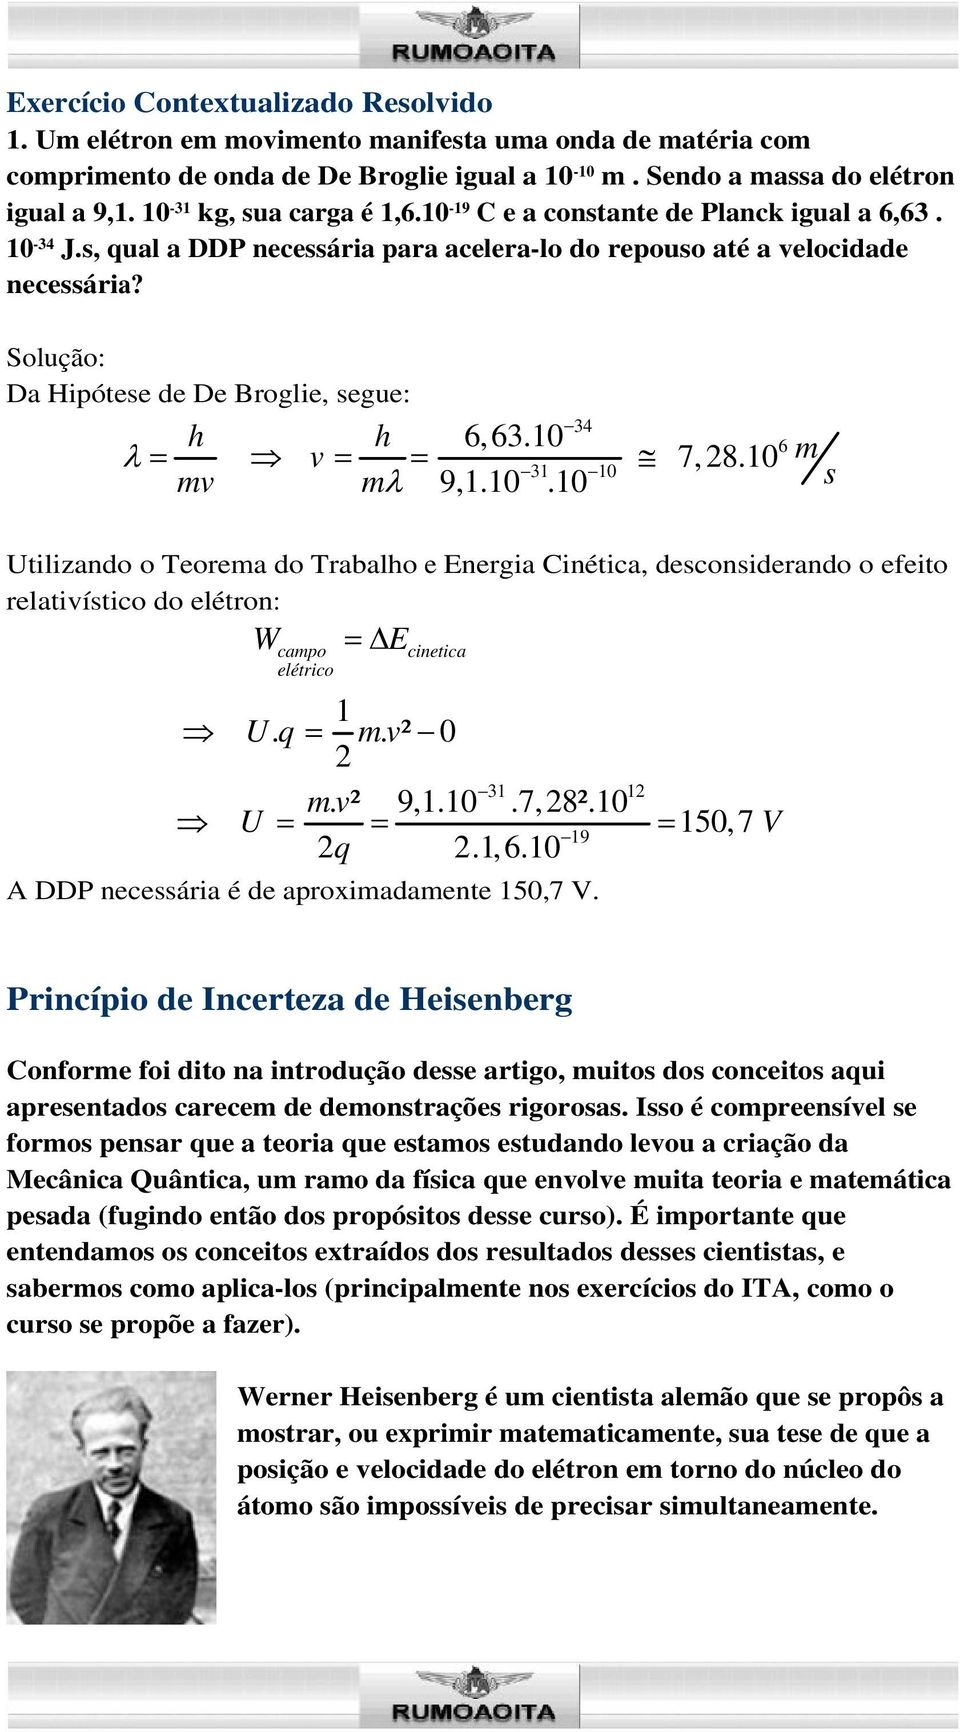 Solução: Da Hipótese de De Broglie, segue: 34 6, 63.10 6 v 7, 8.10 m 31 10 mv m 9,1.10.10 s Utilizando o Teorema do Trabalo e Energia Cinética, desconsiderando o efeito relativístico do elétron: W campo elétrico E cinetica 1 U.